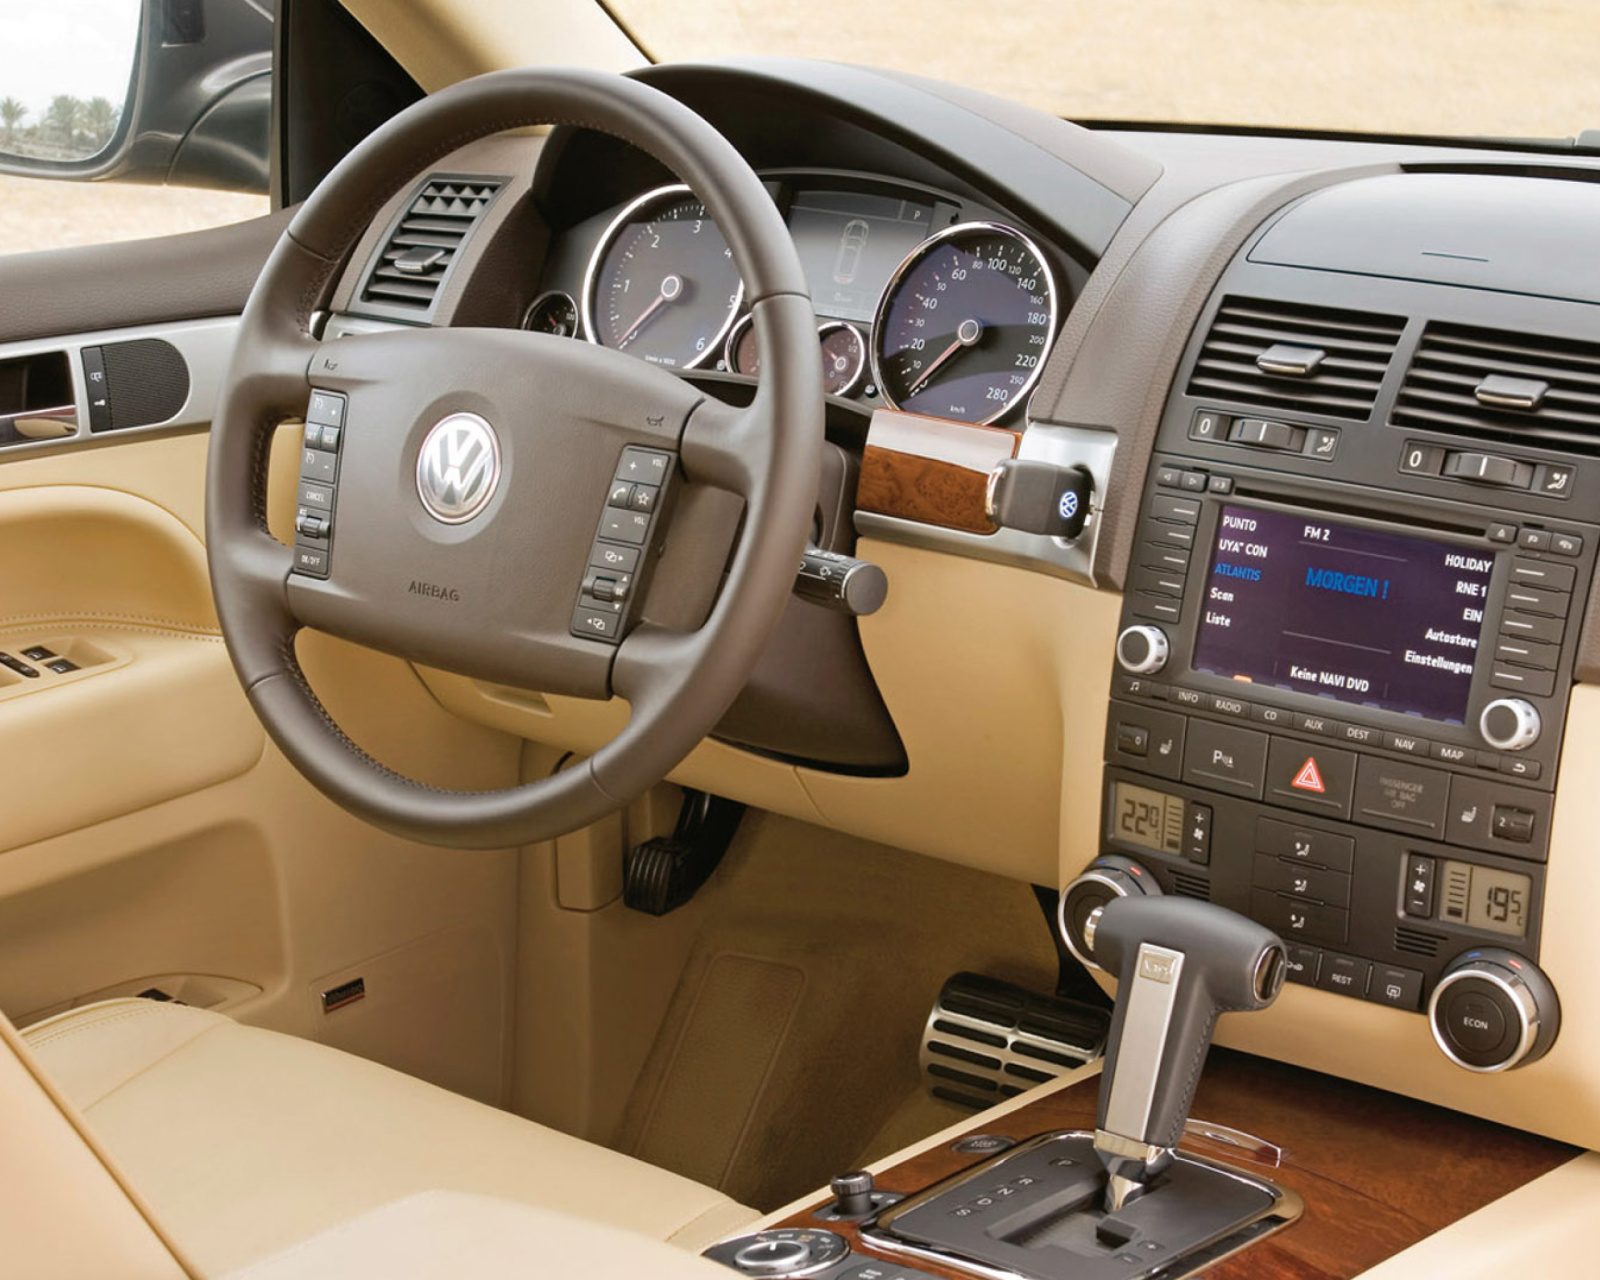 Volkswagen Touareg v10 TDI Interior wallpaper 1600x1280